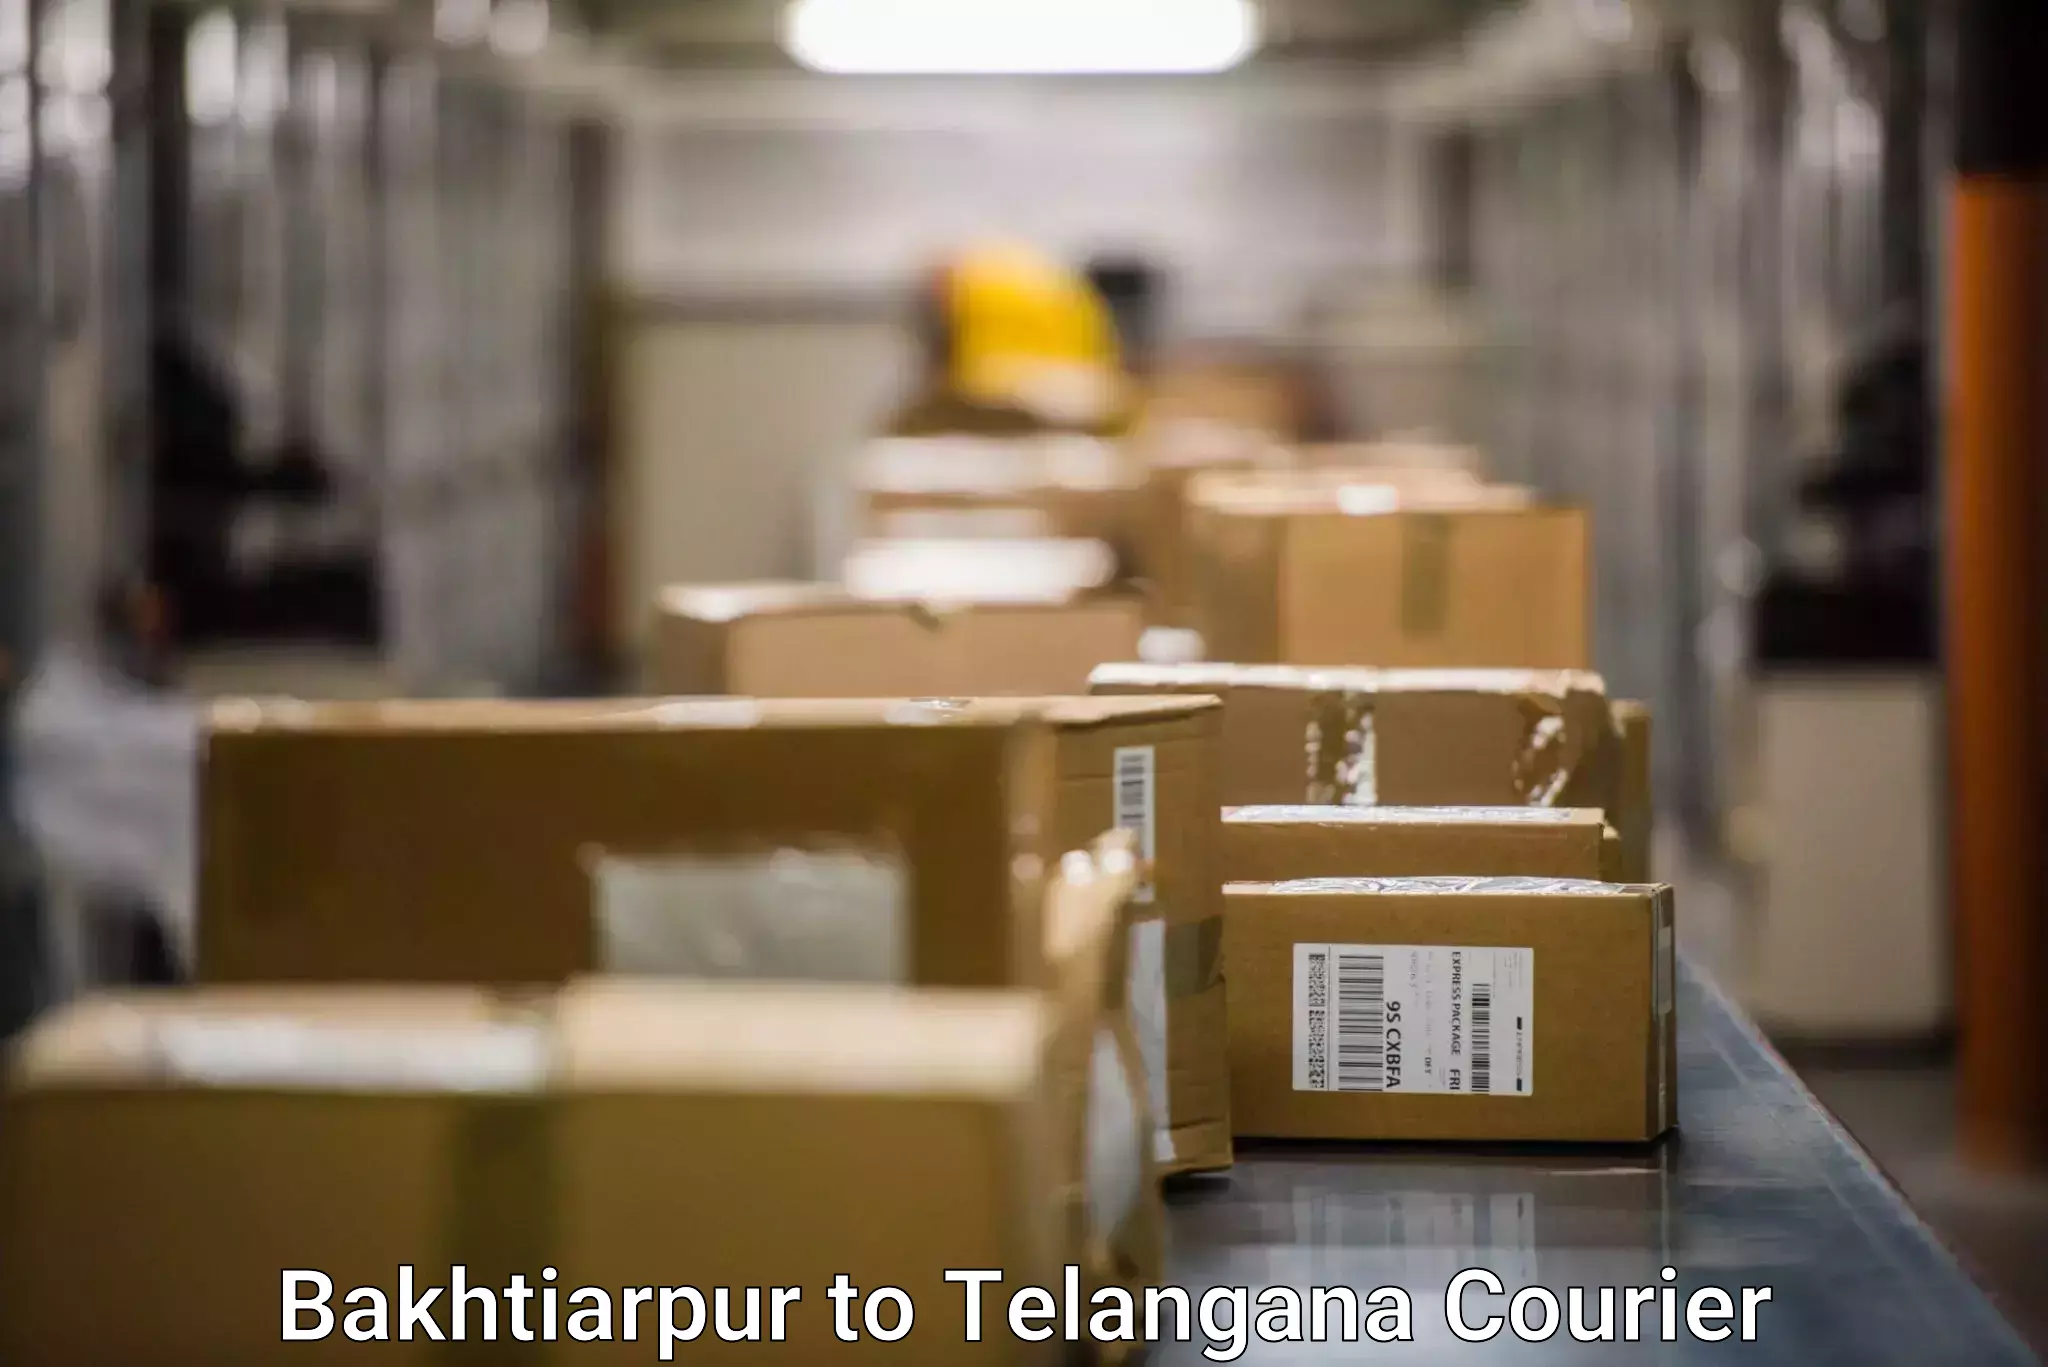 Fragile item shipping in Bakhtiarpur to Raikal